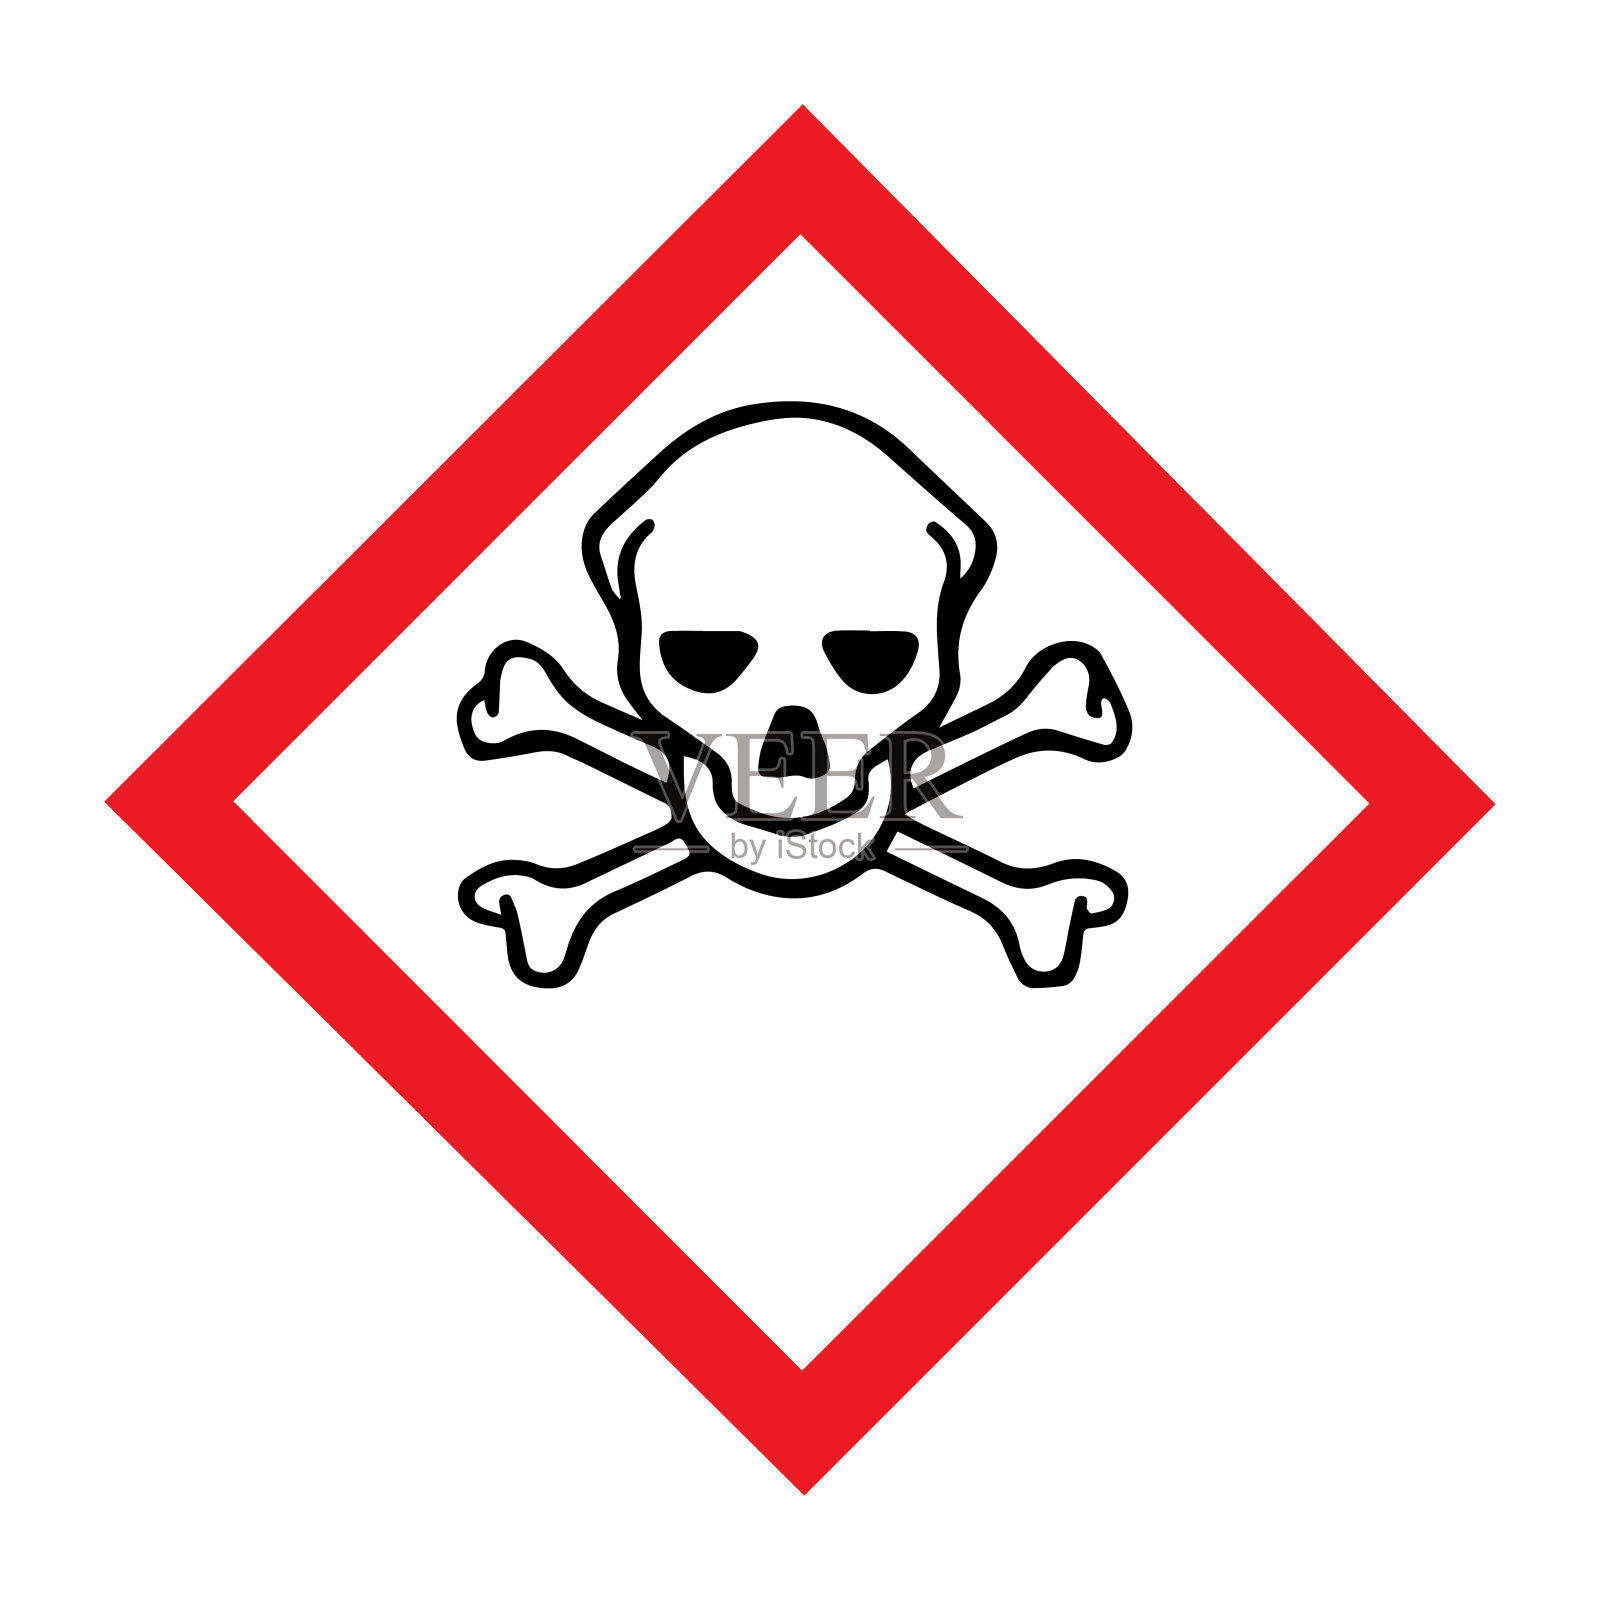 全球协调系统(GHS)有毒标志、警告标志的标准象形图插画图片素材